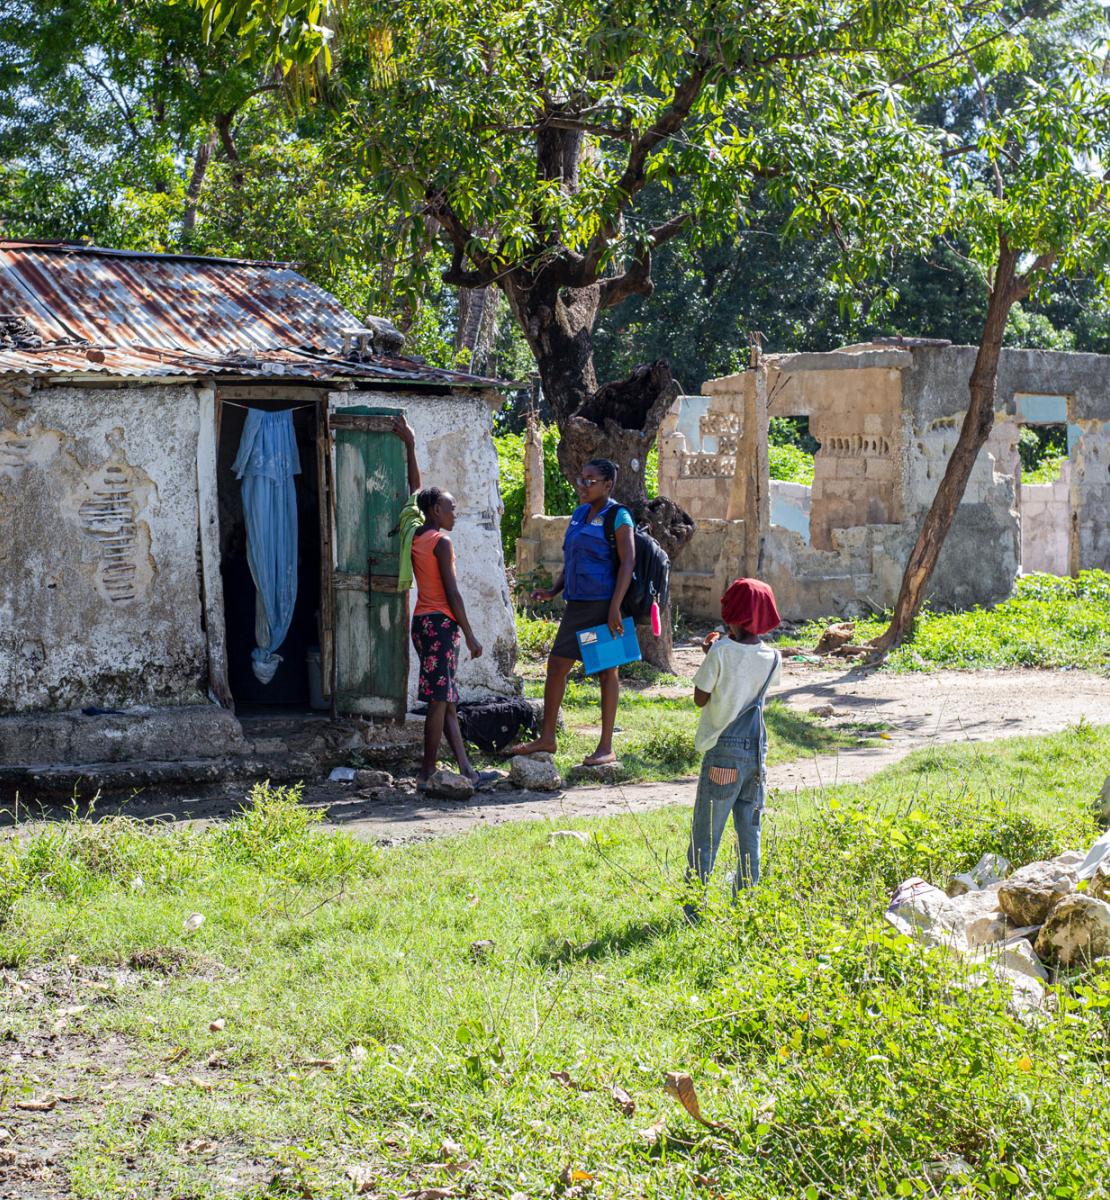 Deux jeunes femmes discutent devant l’entrée d’une vieille maison délabrée entourée d’arbres. Plusieurs enfants jouent à proximité. 